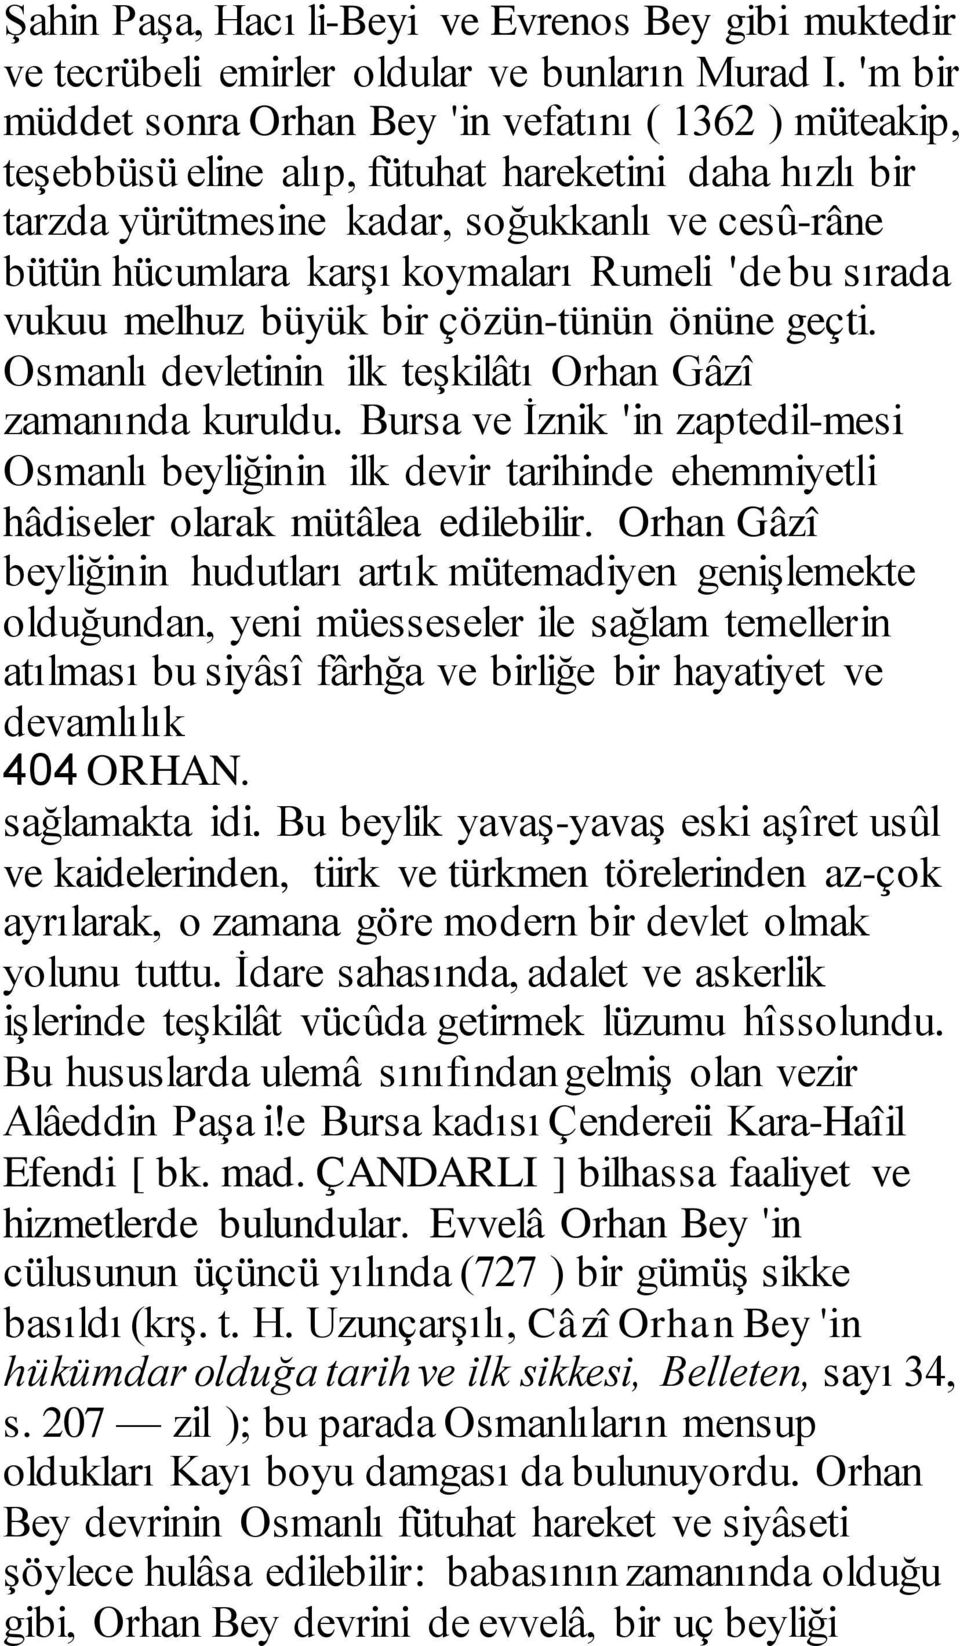 Rumeli 'de bu sırada vukuu melhuz büyük bir çözün-tünün önüne geçti. Osmanlı devletinin ilk teşkilâtı Orhan Gâzî zamanında kuruldu.